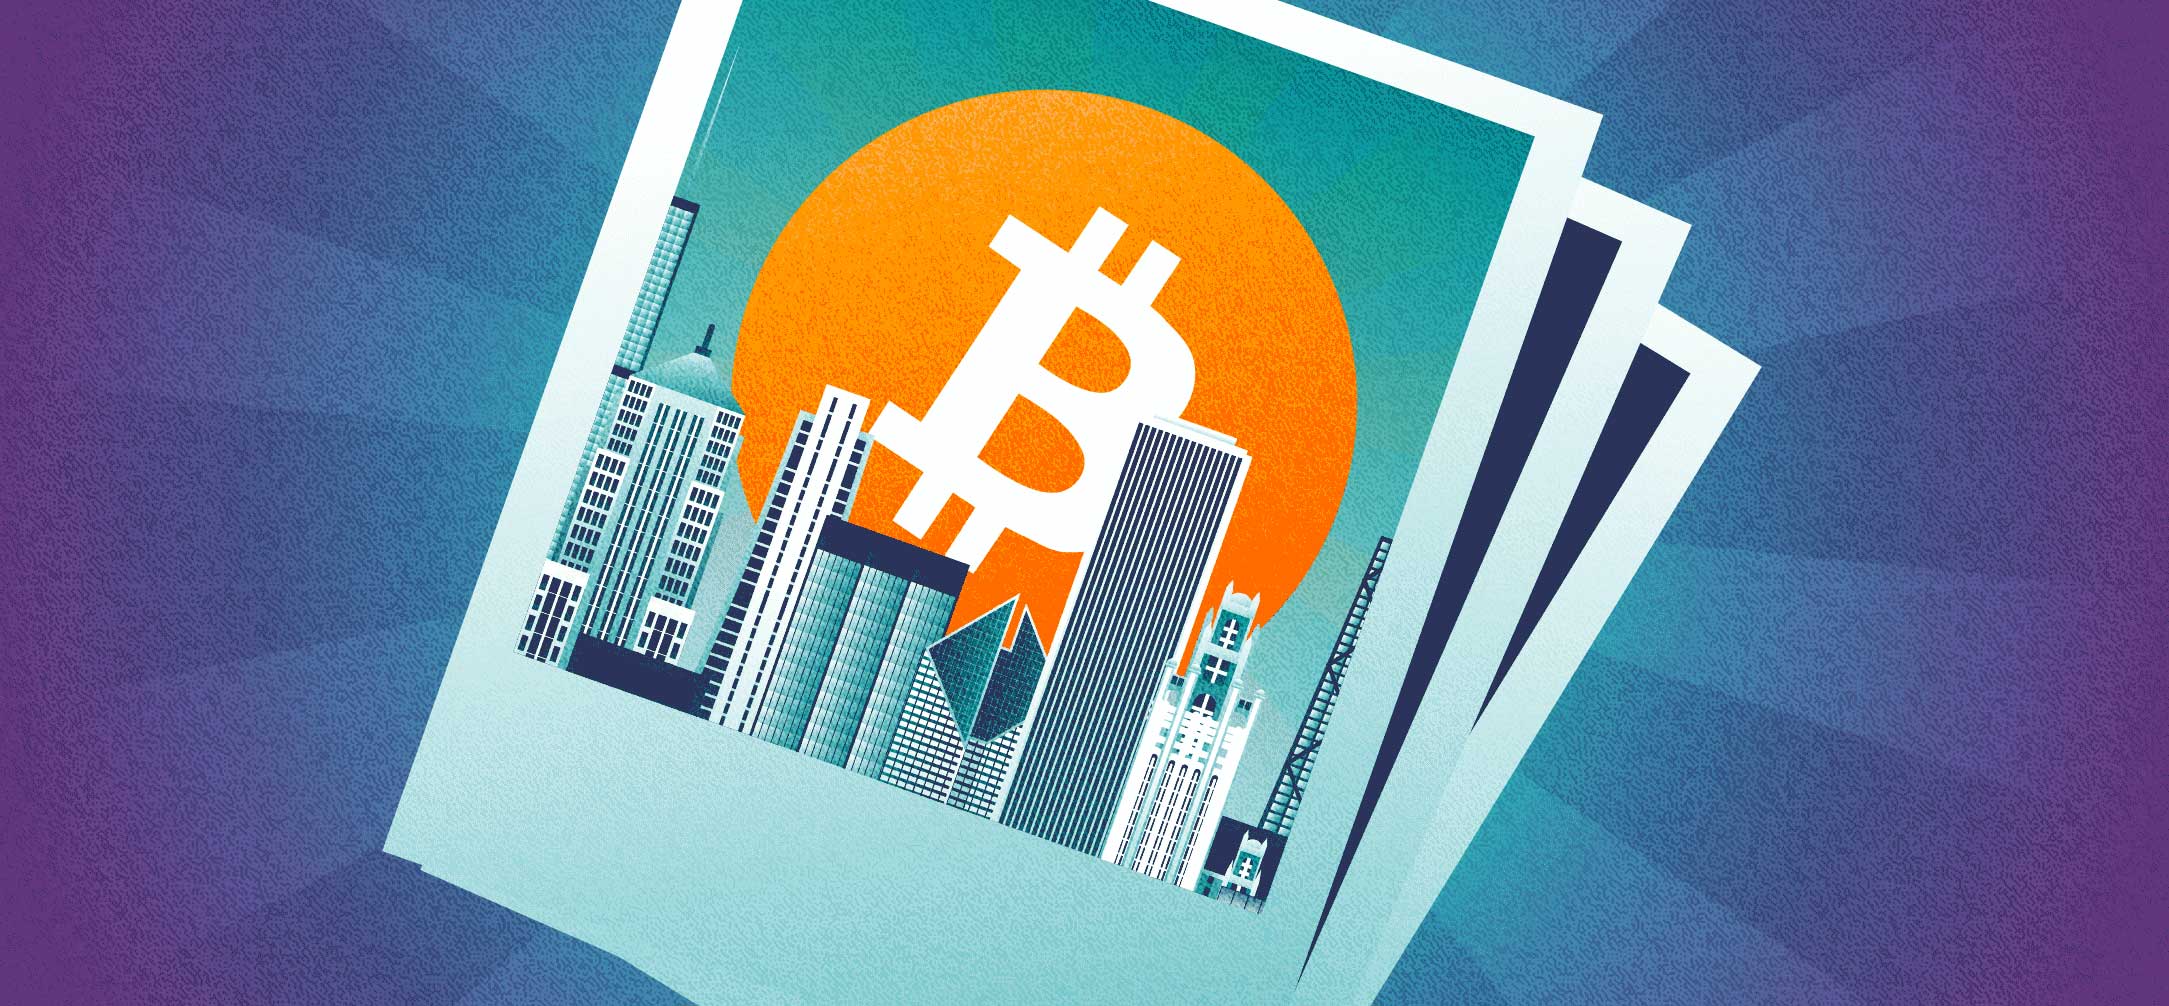 Polaroid photos of a Bitcoin logo over the Chicago skyline